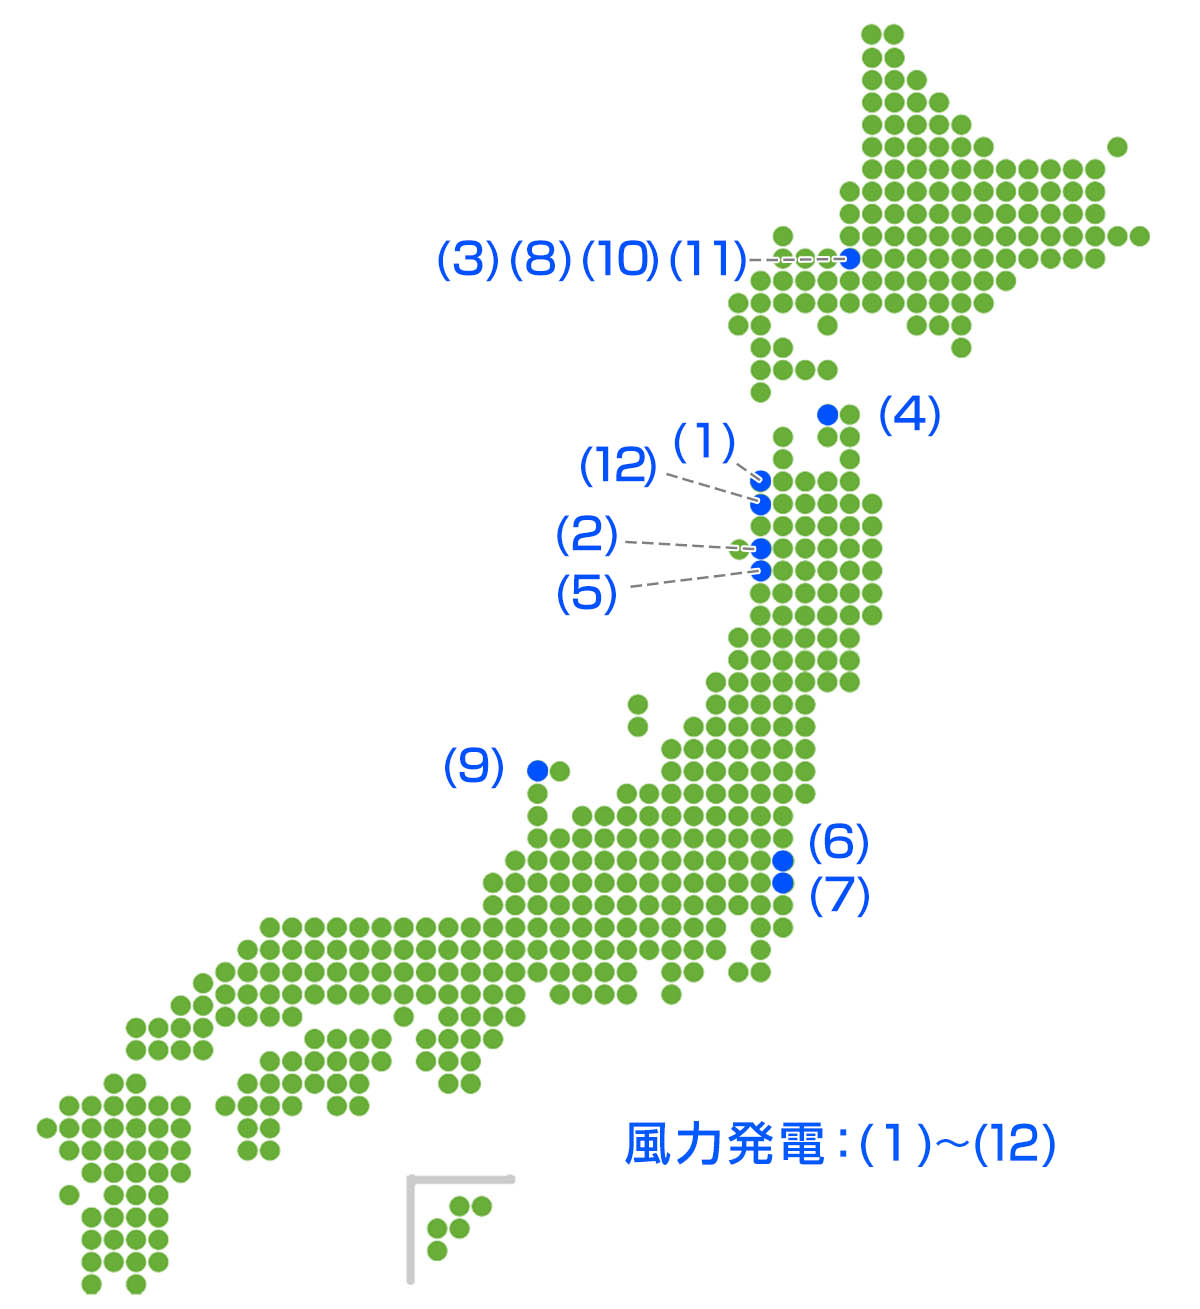 日本の風力発電